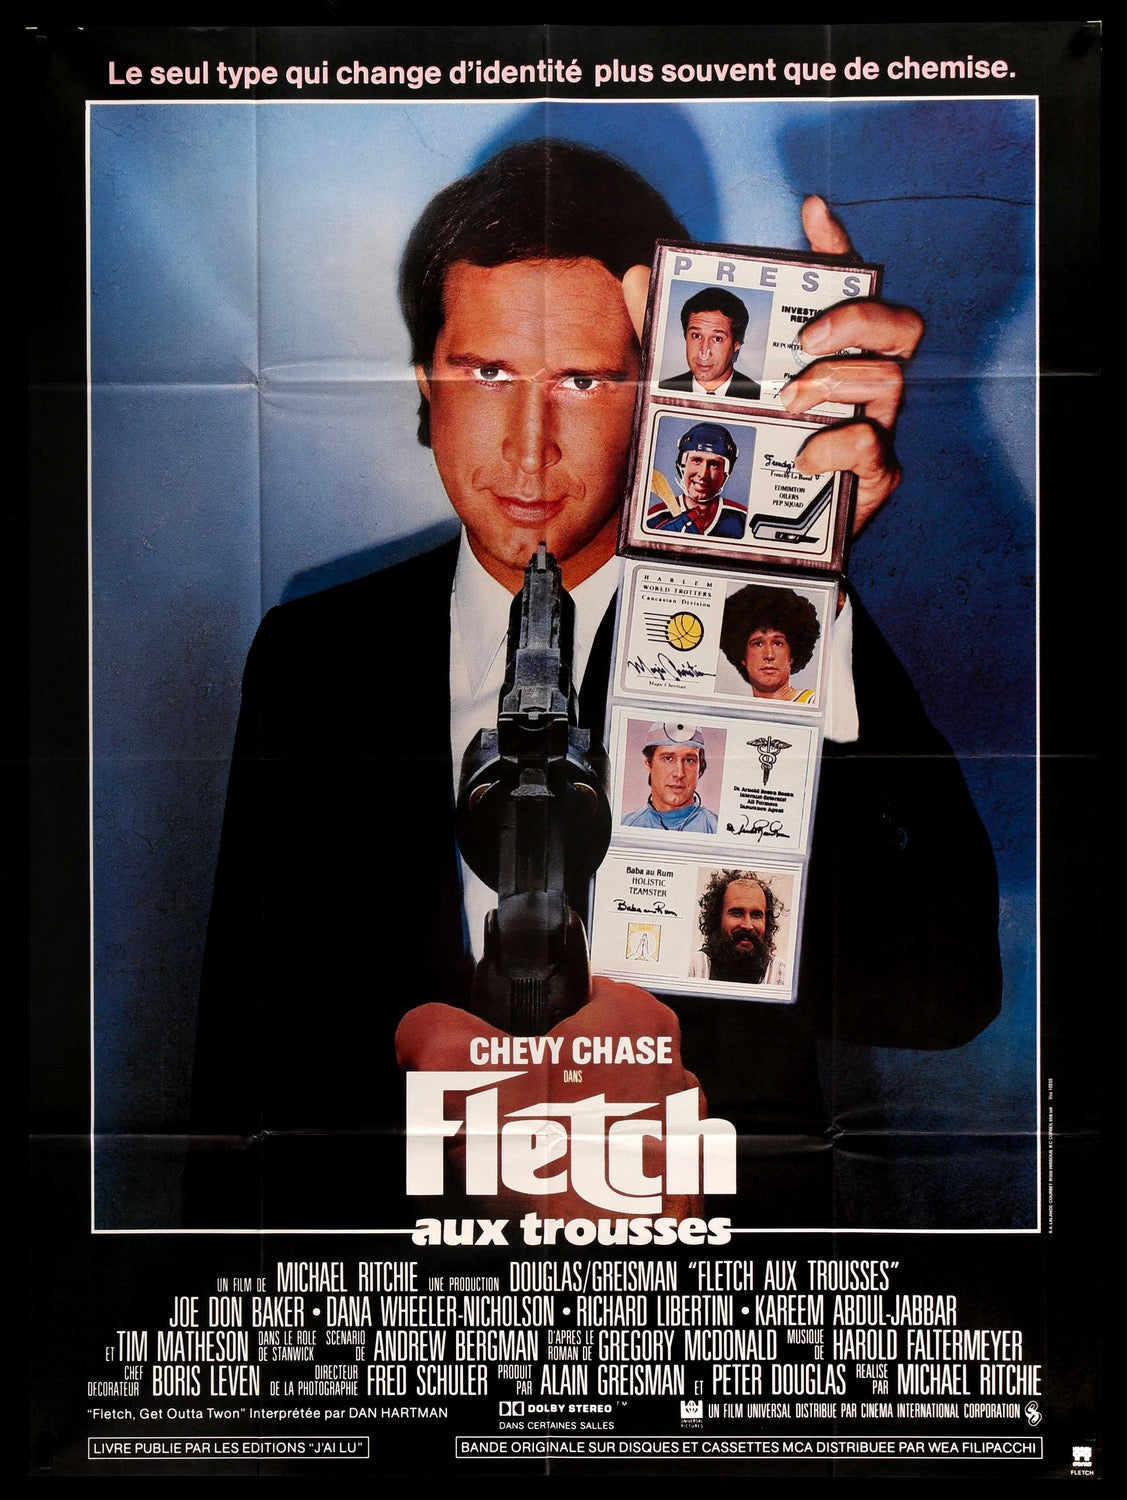 Fletch (1985) original movie poster for sale at Original Film Art